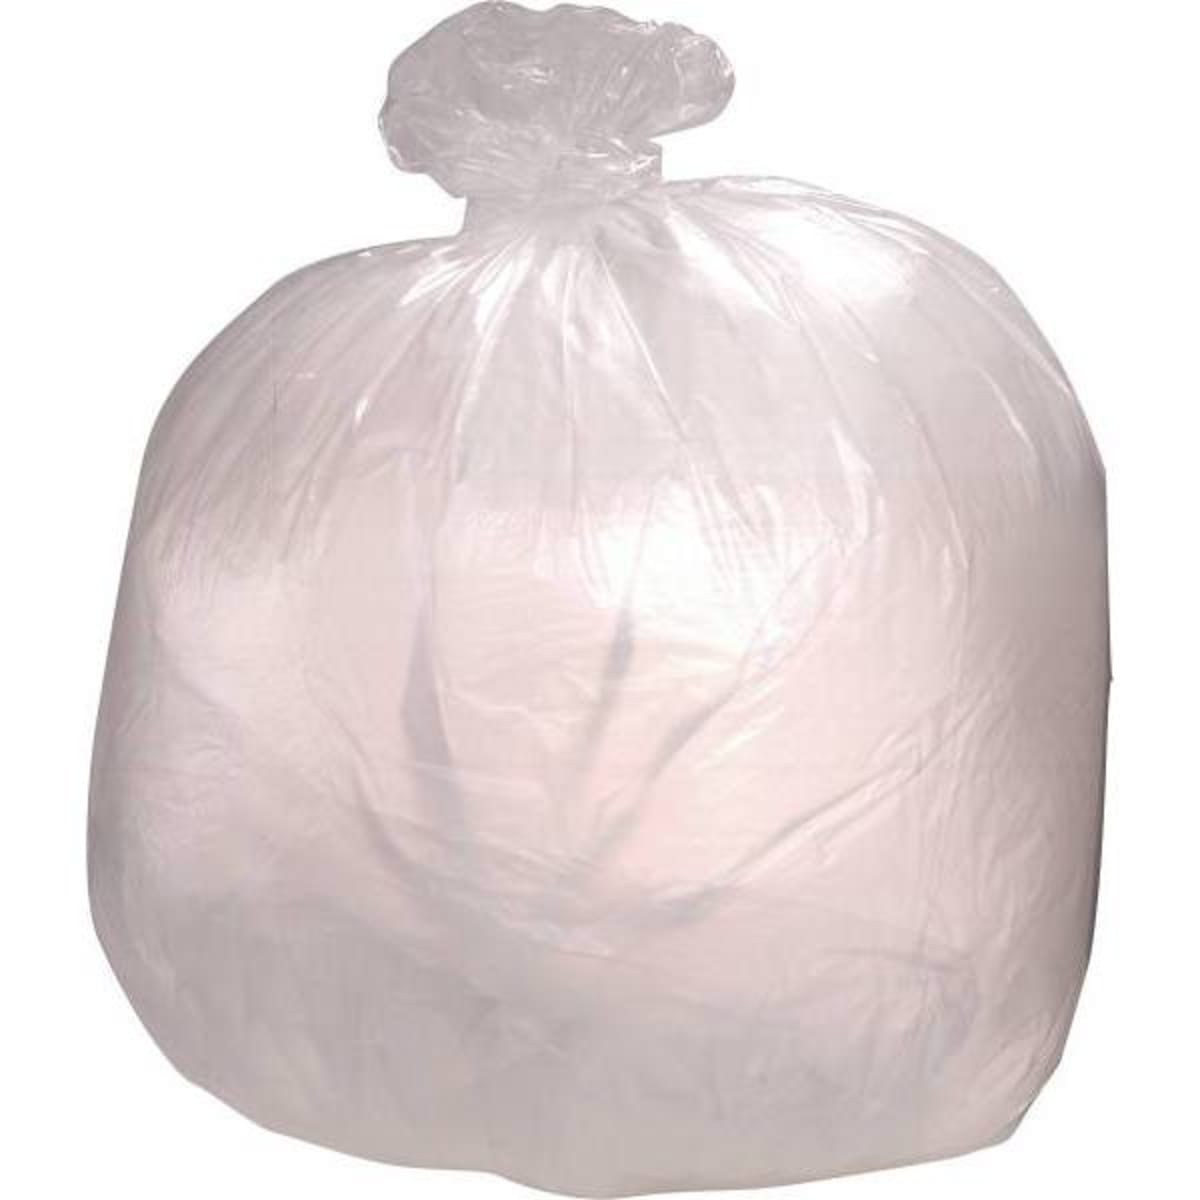 Colonial Bag Trash Bags, Medium Duty, 30 gal, 0.45 mil - Black, 30 in x 36  in